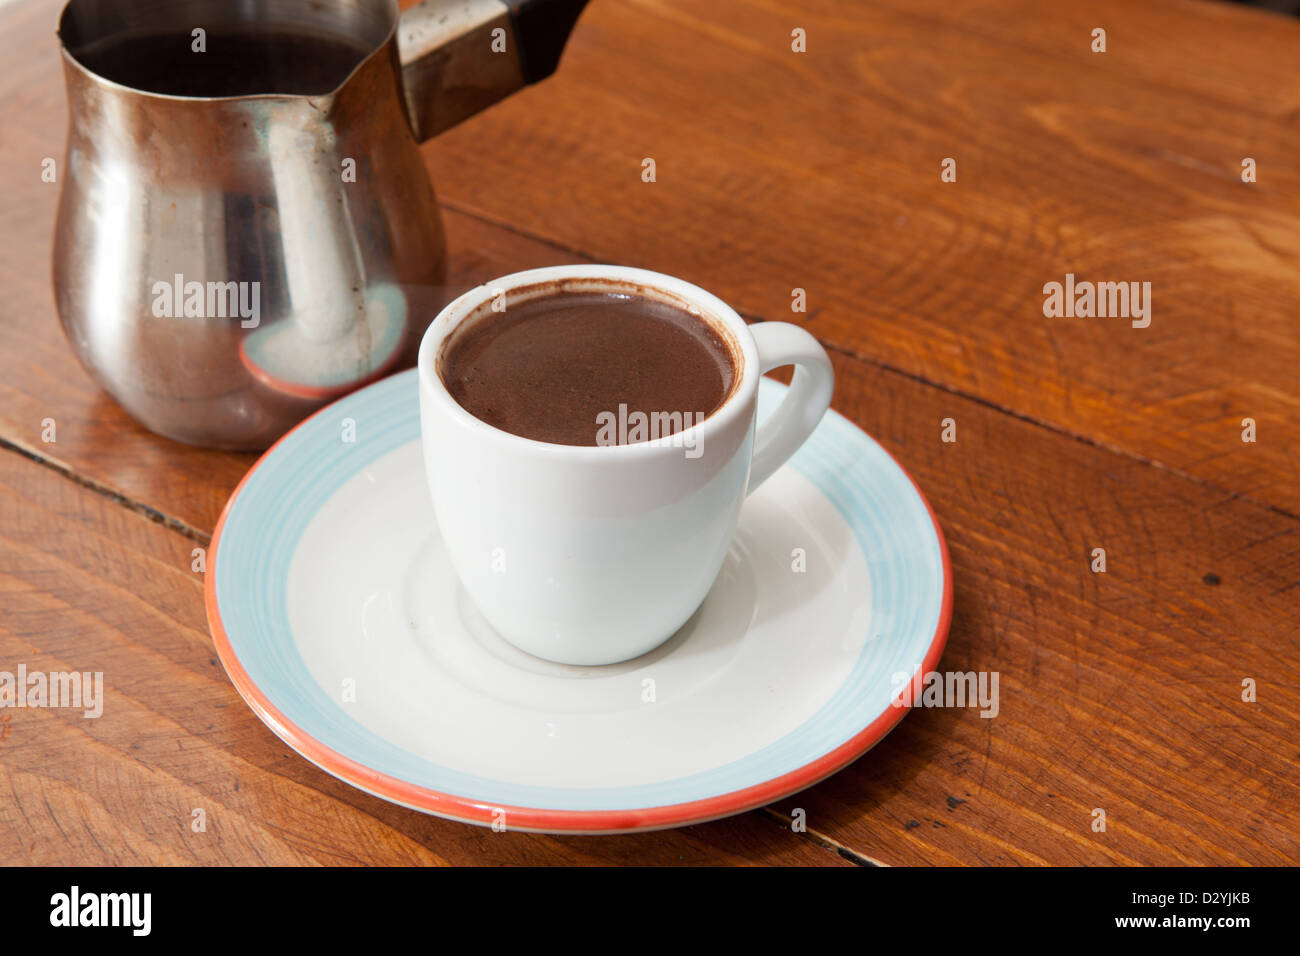 Demitasse reichen und robuste türkischem oder arabischem Kaffee Tasse mit Metall Karaffe serviert. Stockfoto